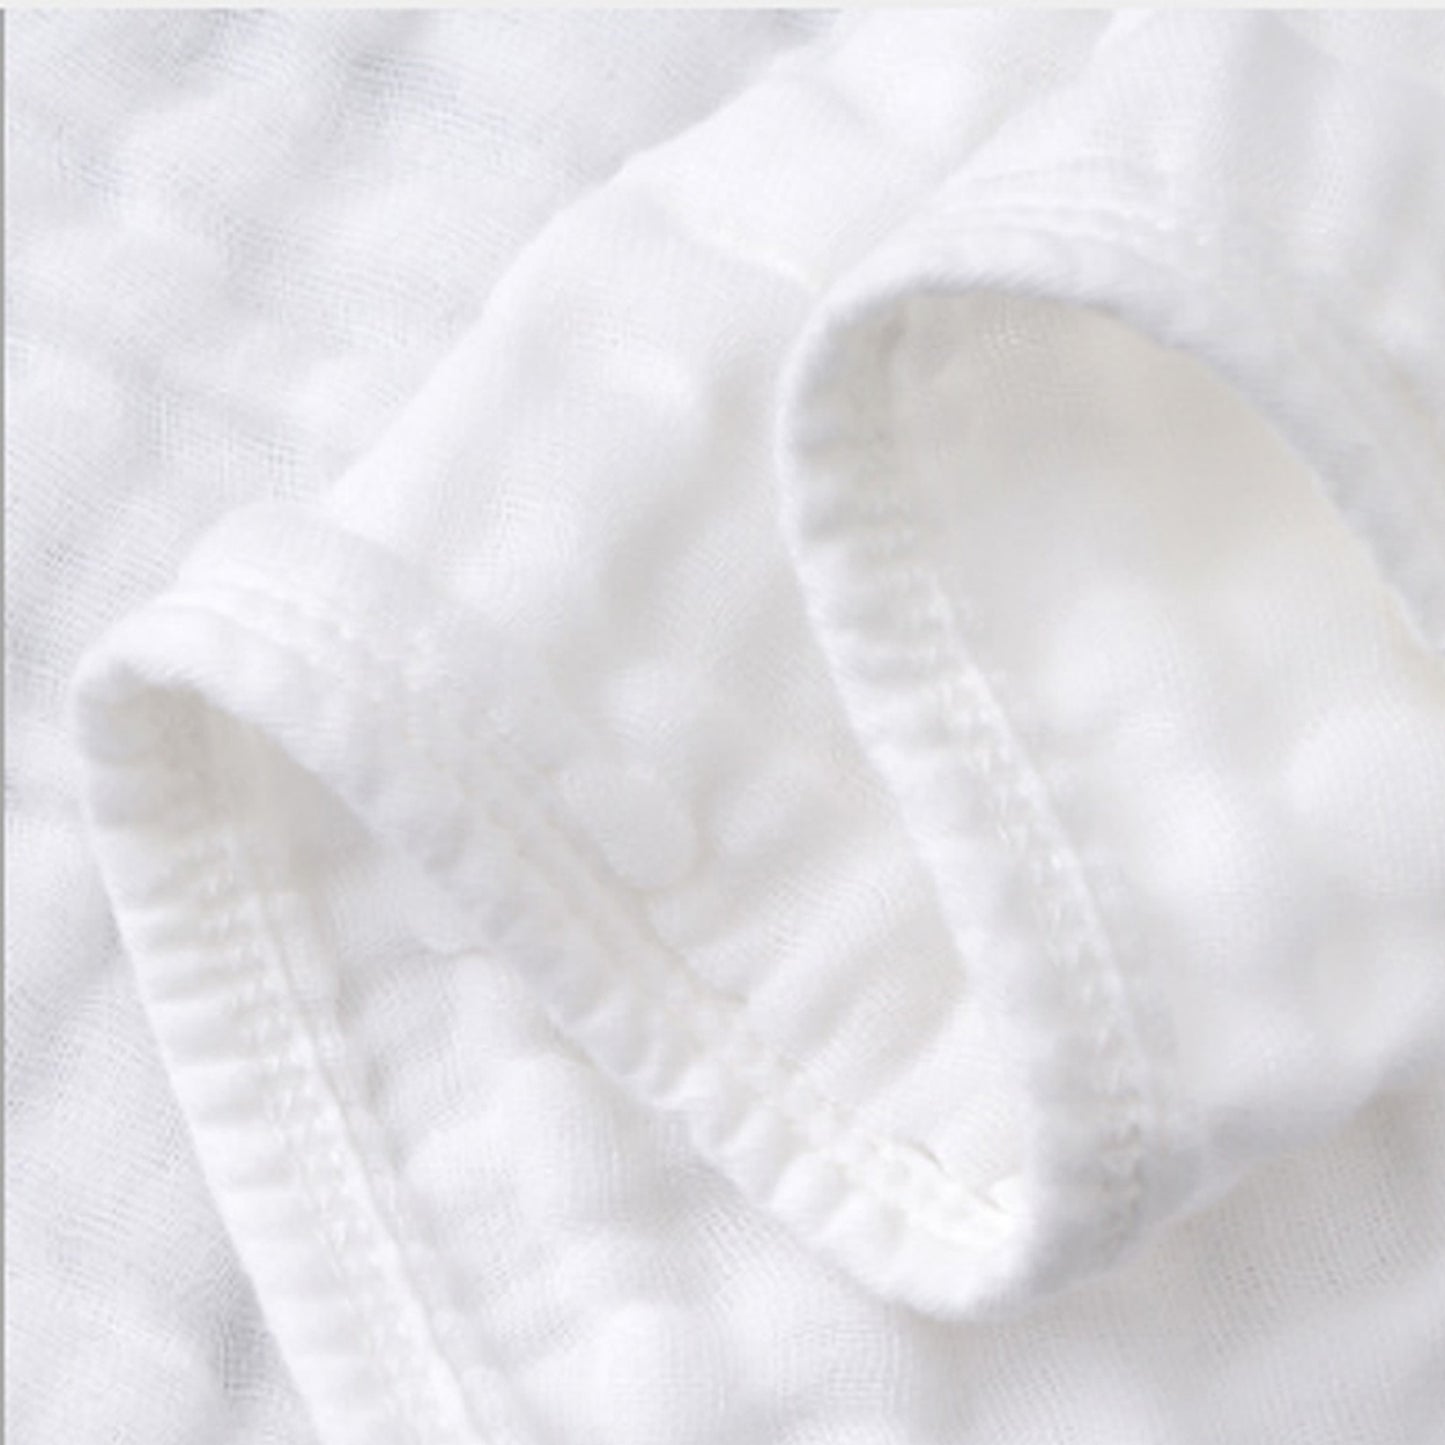 White Cotton 6 Layers Gauze Blanket